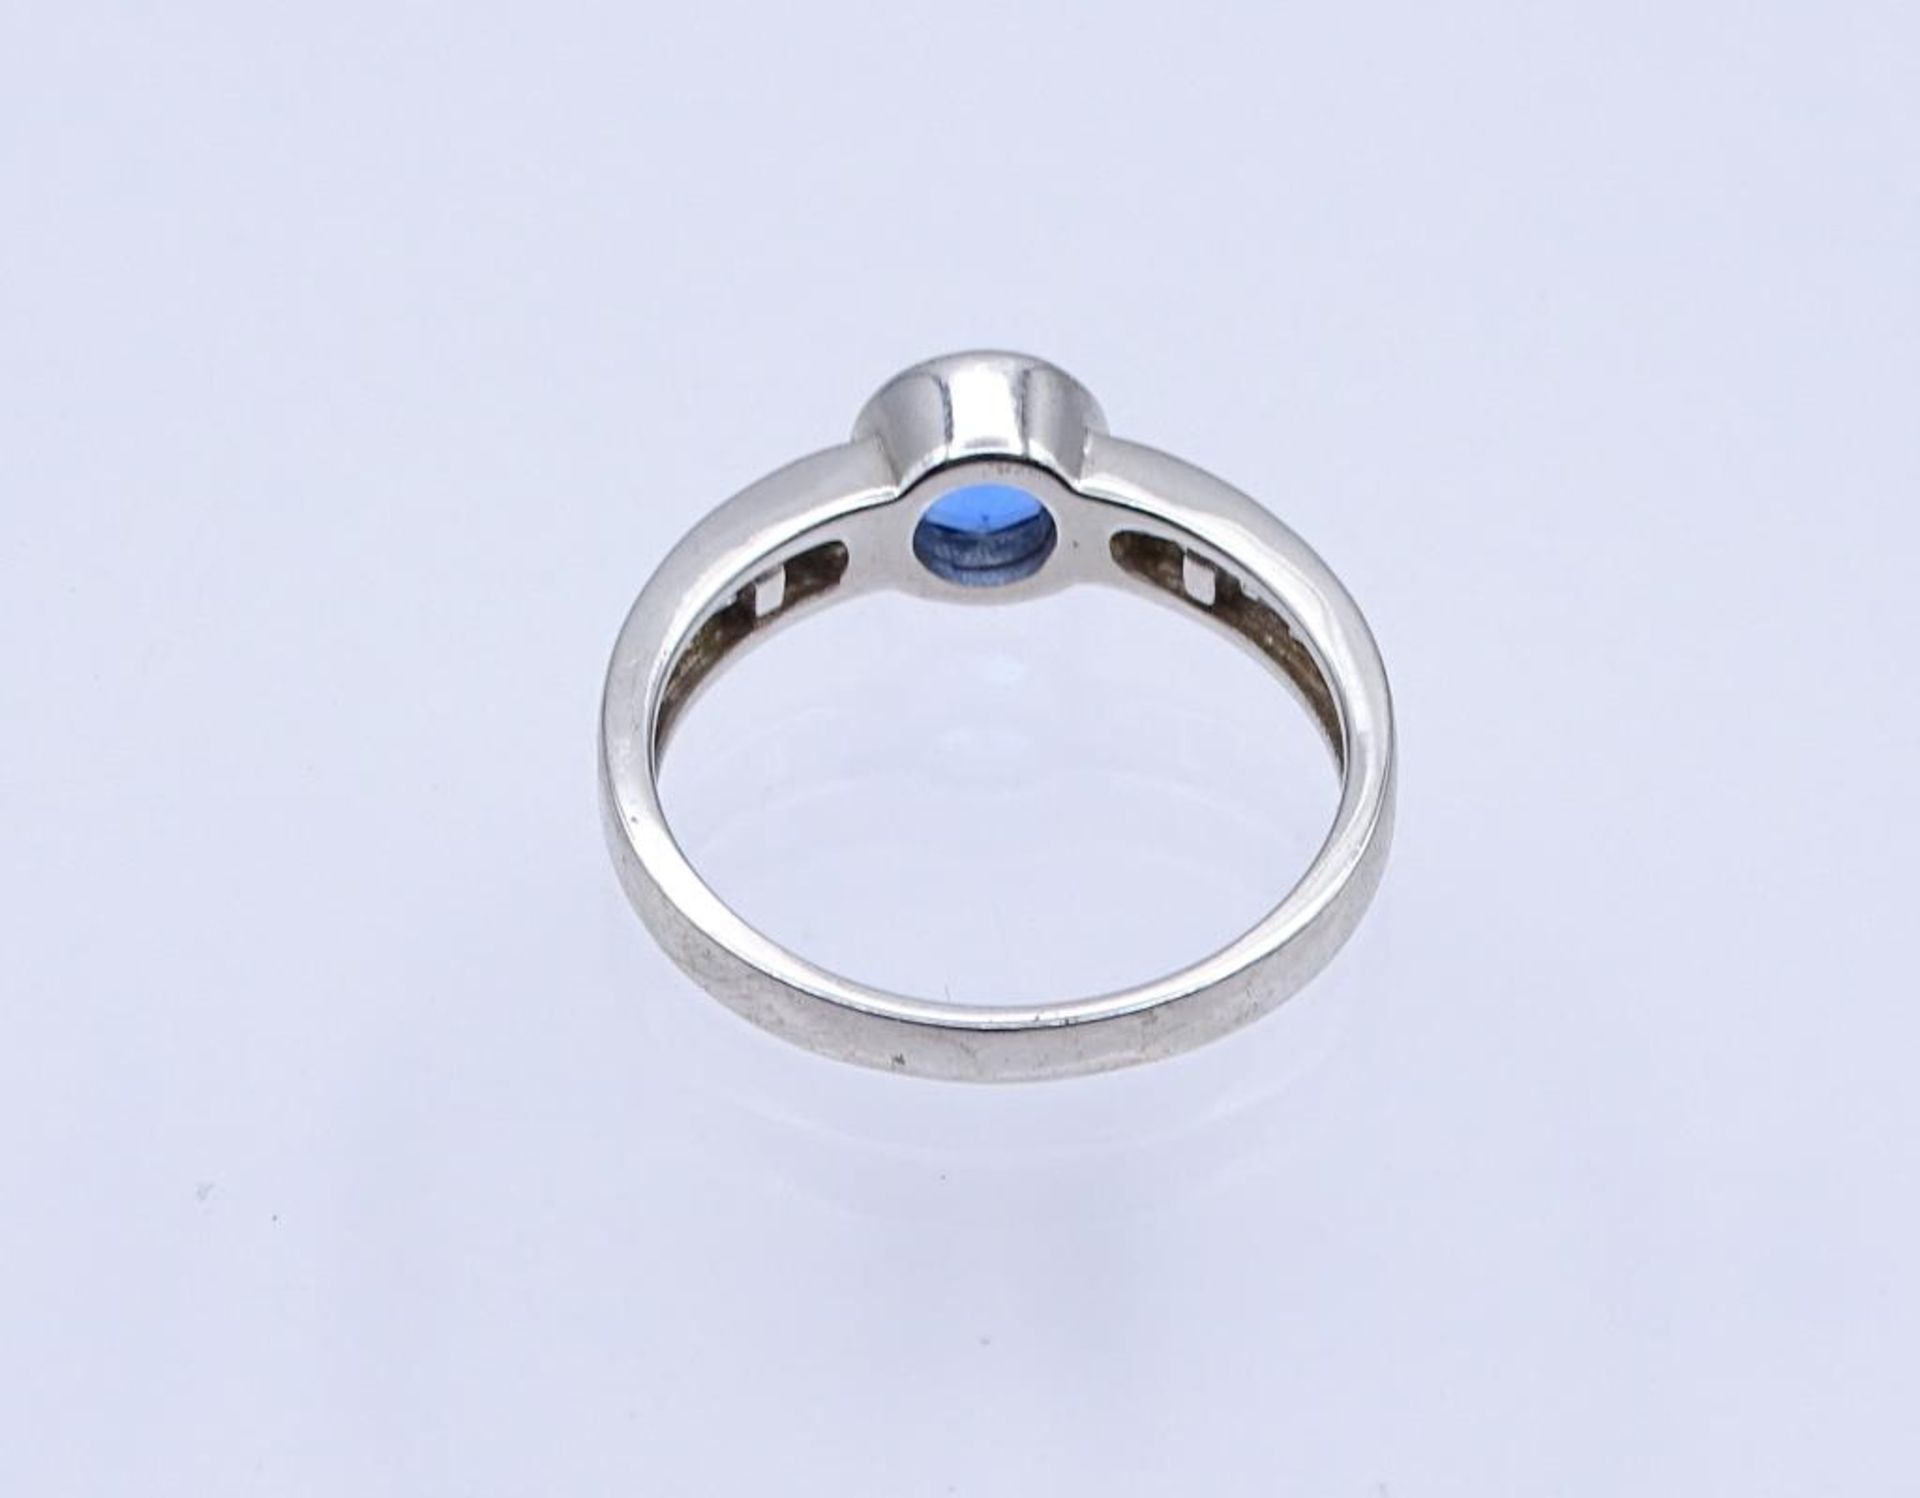 Silber Ring mit Zirkonia, Silber 925/000, 3,9gr., RG 63- - -22.61 % buyer's premium on the hammer - Bild 3 aus 3